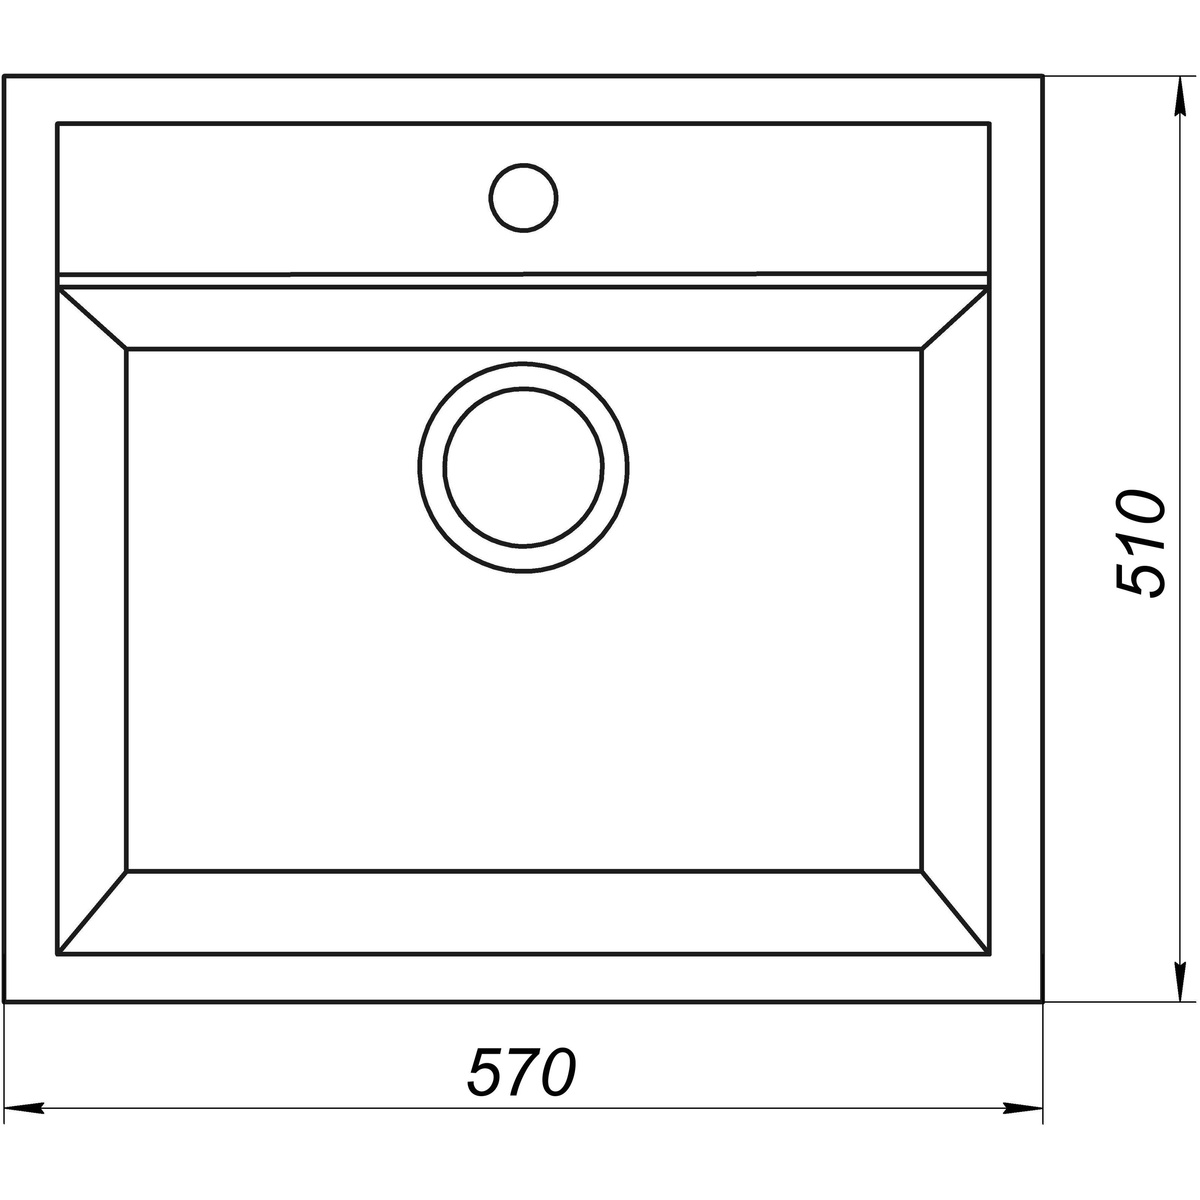 Кухонна мийка зі штучного каміння прямокутна GLOBUS LUX VOLTA 510мм x 570мм бежевий без сифону 000022408